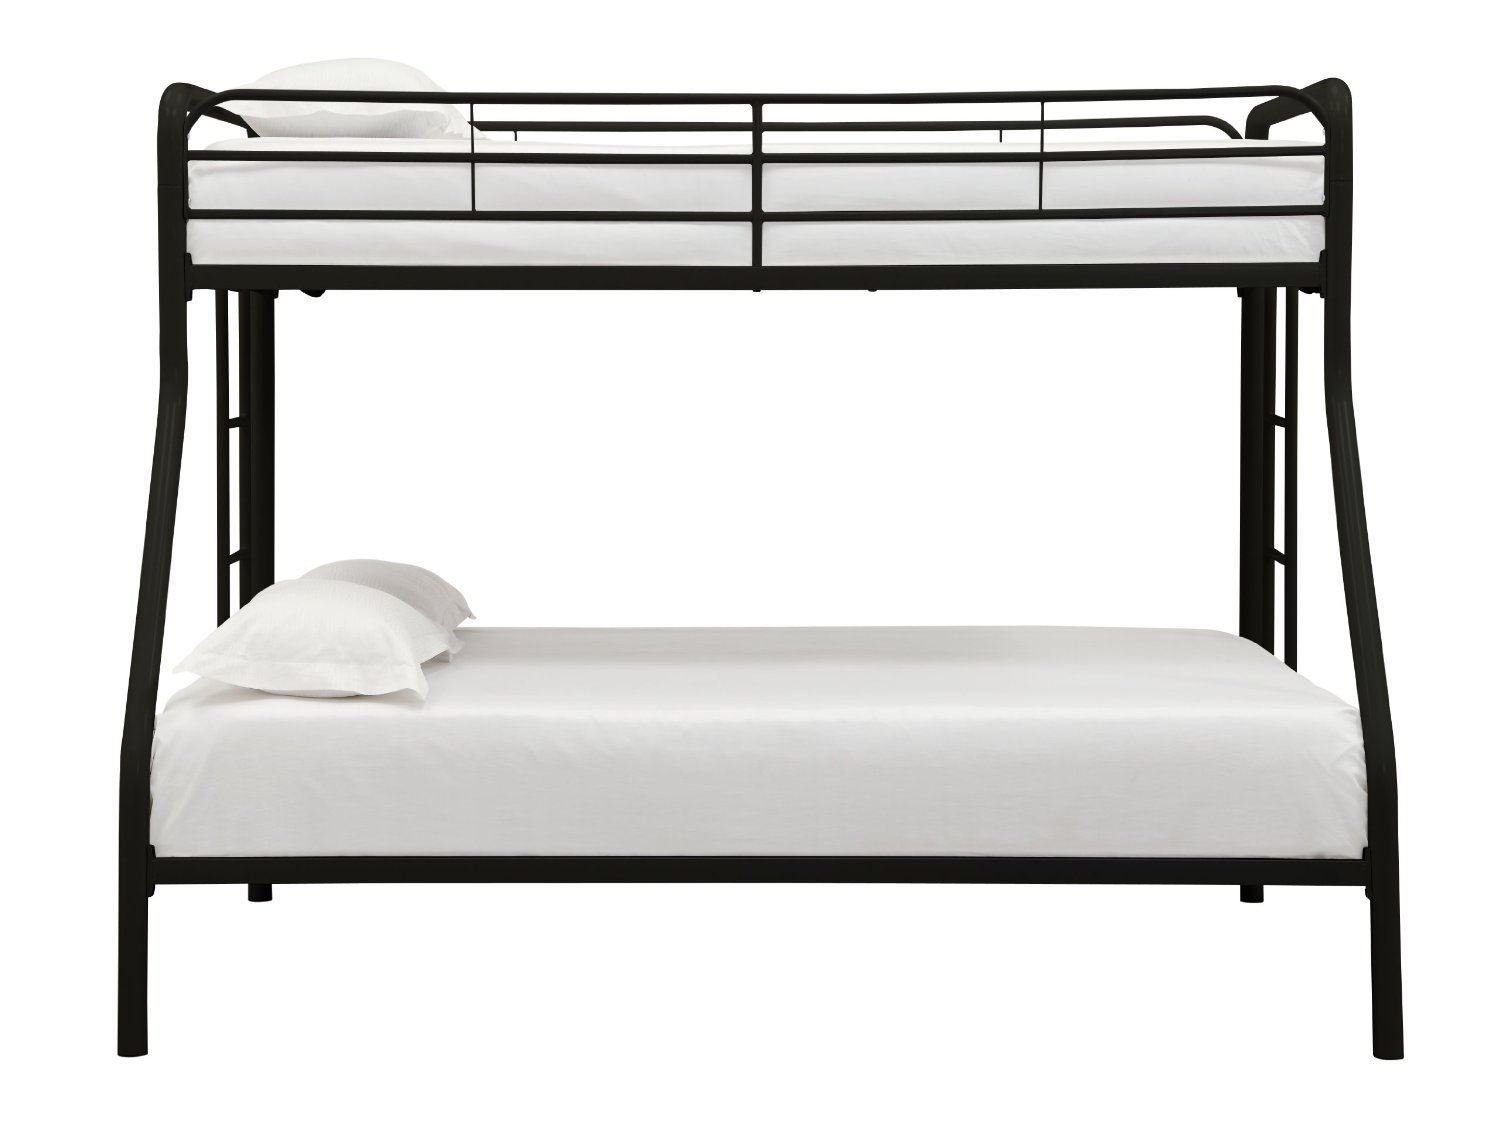 ArtSteel Double Deck Bed 22